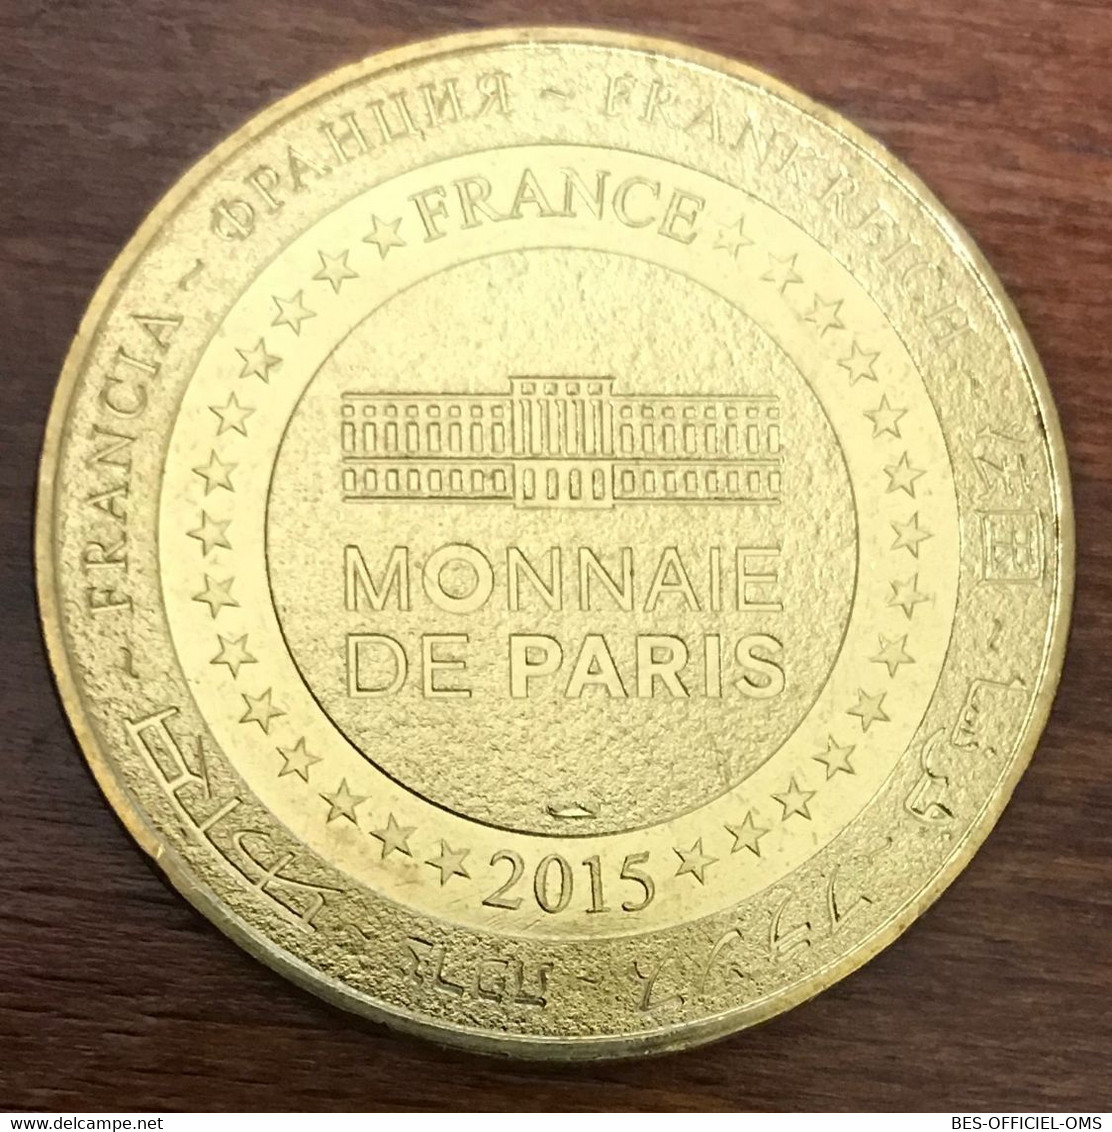 07 LE PONT D'ARC N°2 GORGES DE L'ARDÈCHE MDP 2015 MÉDAILLE TOURISTIQUE MONNAIE DE PARIS JETON TOKENS MEDALS COINS - 2015